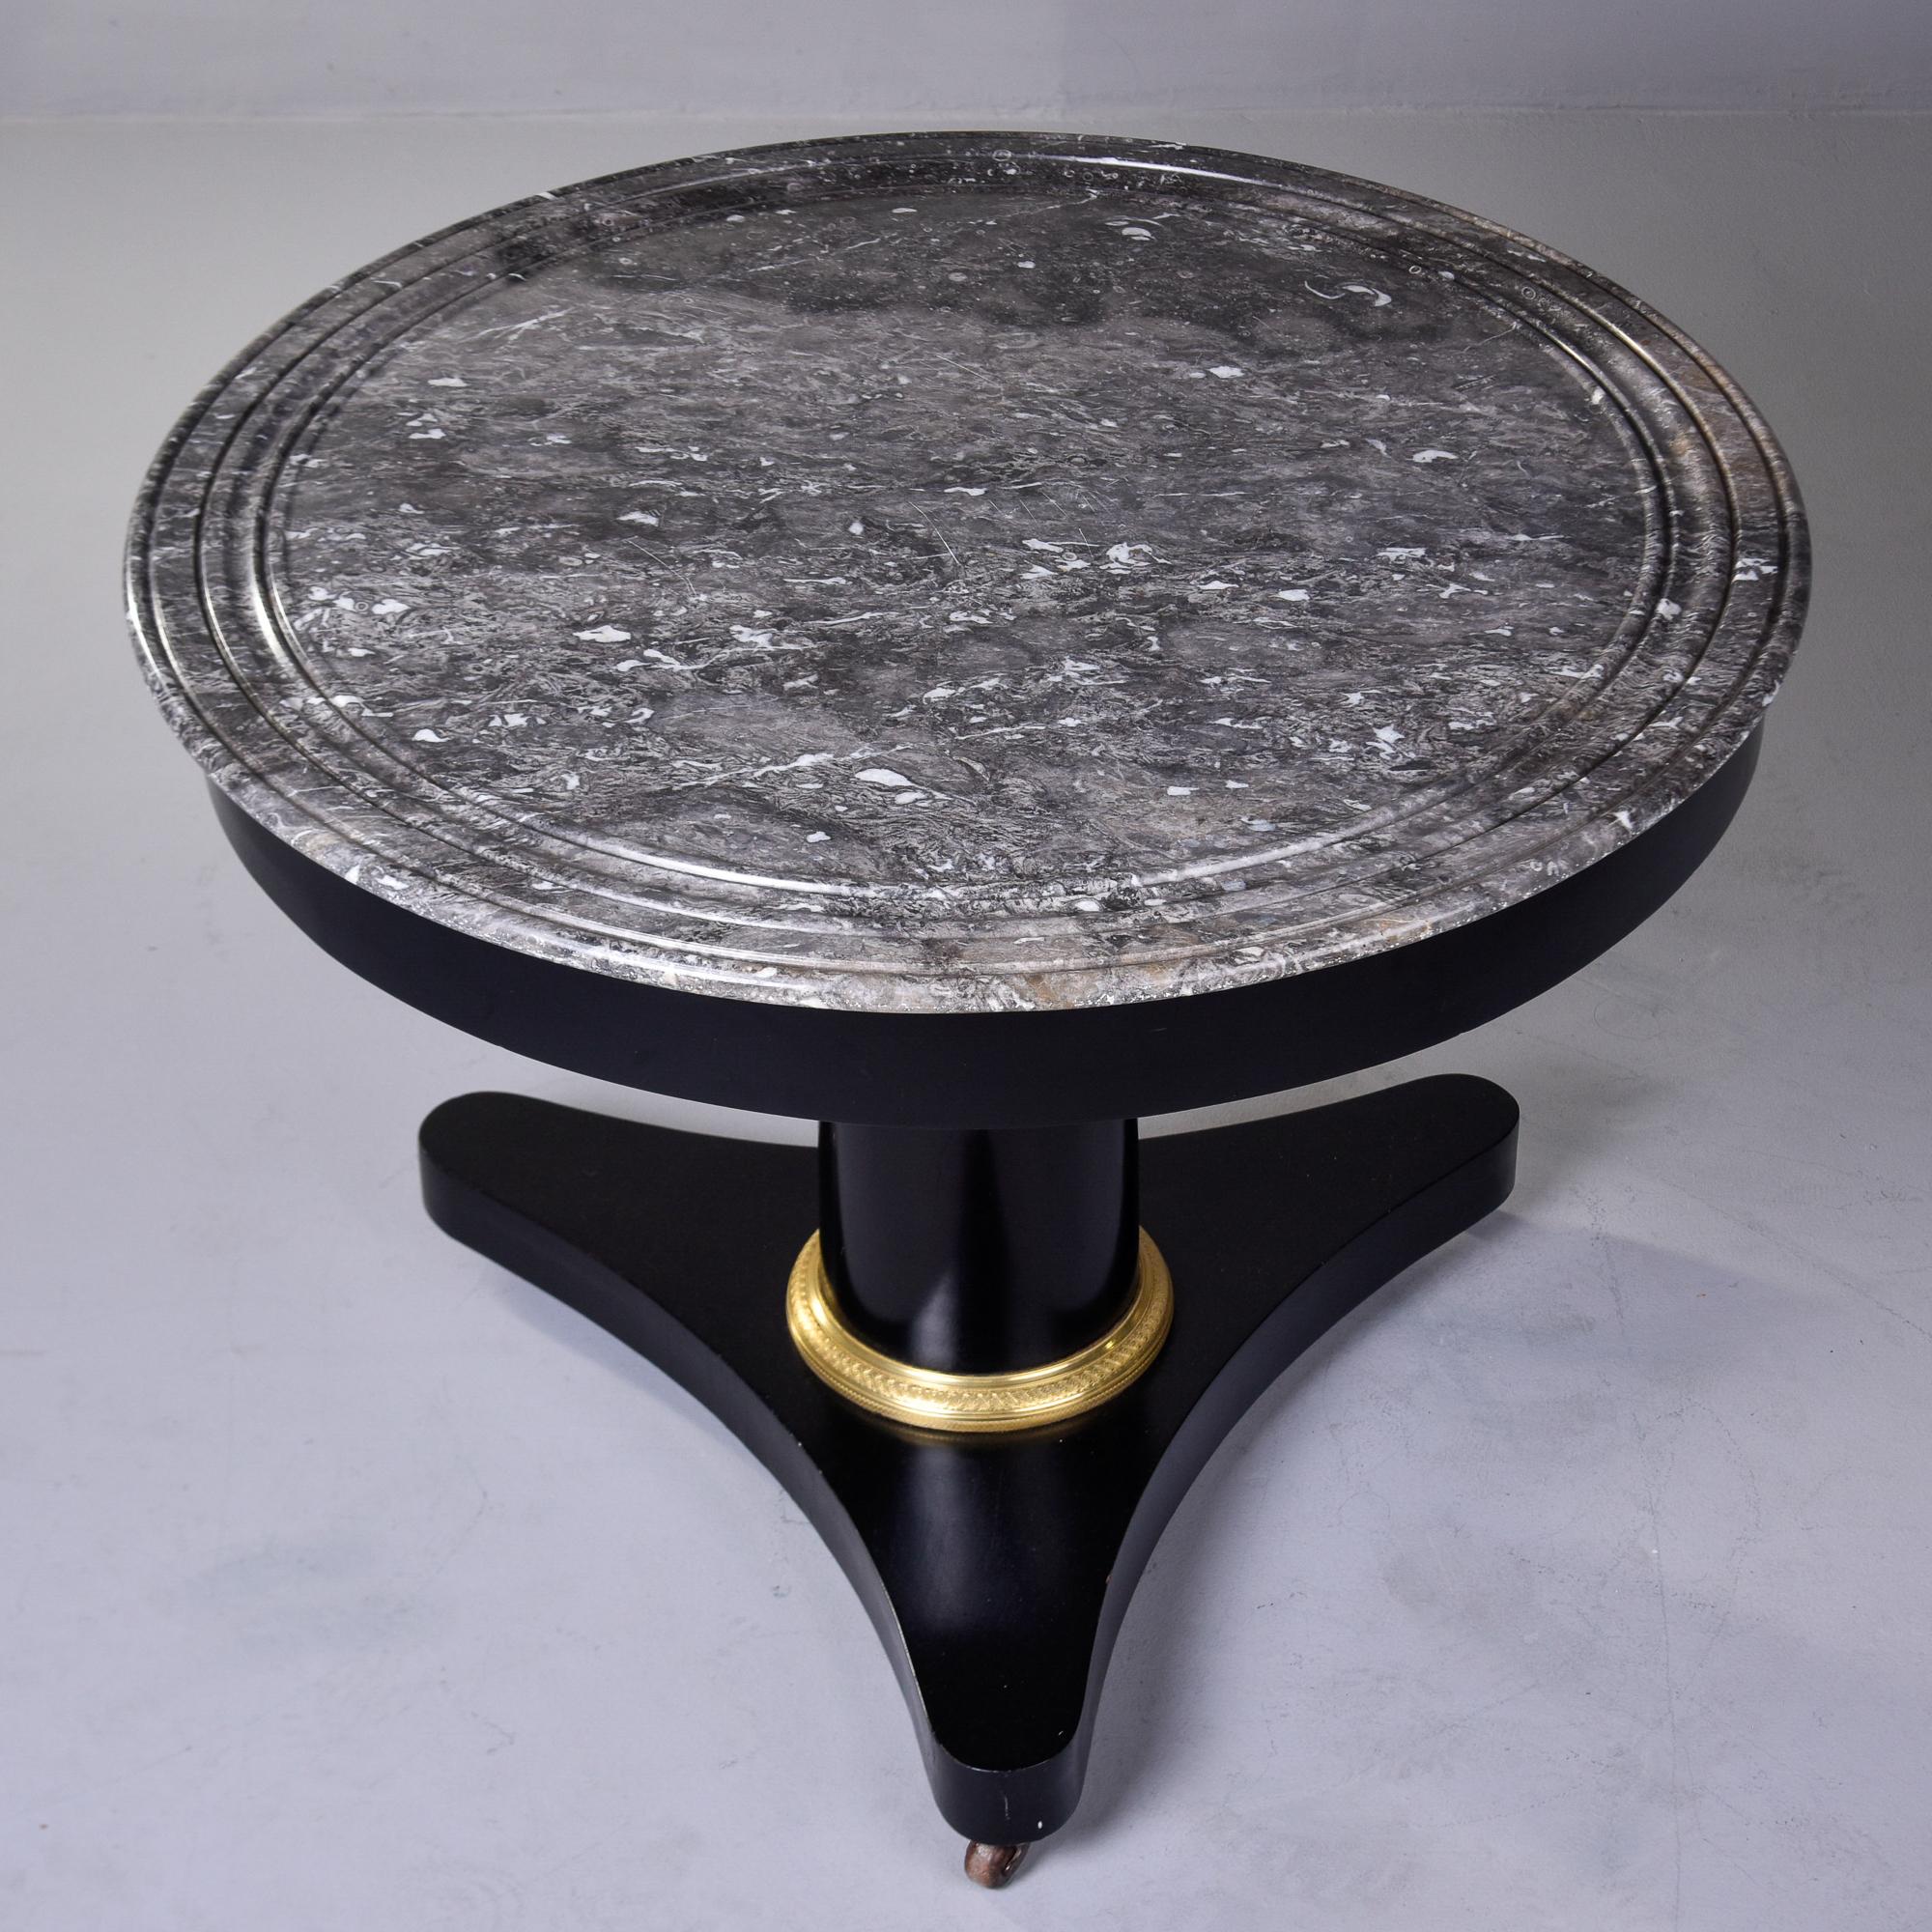 Dieser in Frankreich gefundene Mahagoni-Mitteltisch aus der Zeit um 1840 hat eine neue, professionell aufgetragene Ebonisierung. Graue und weiß gestreifte runde Marmorplatte mit einem messingverzierten Dreifuß auf Rollen. Unbekannter